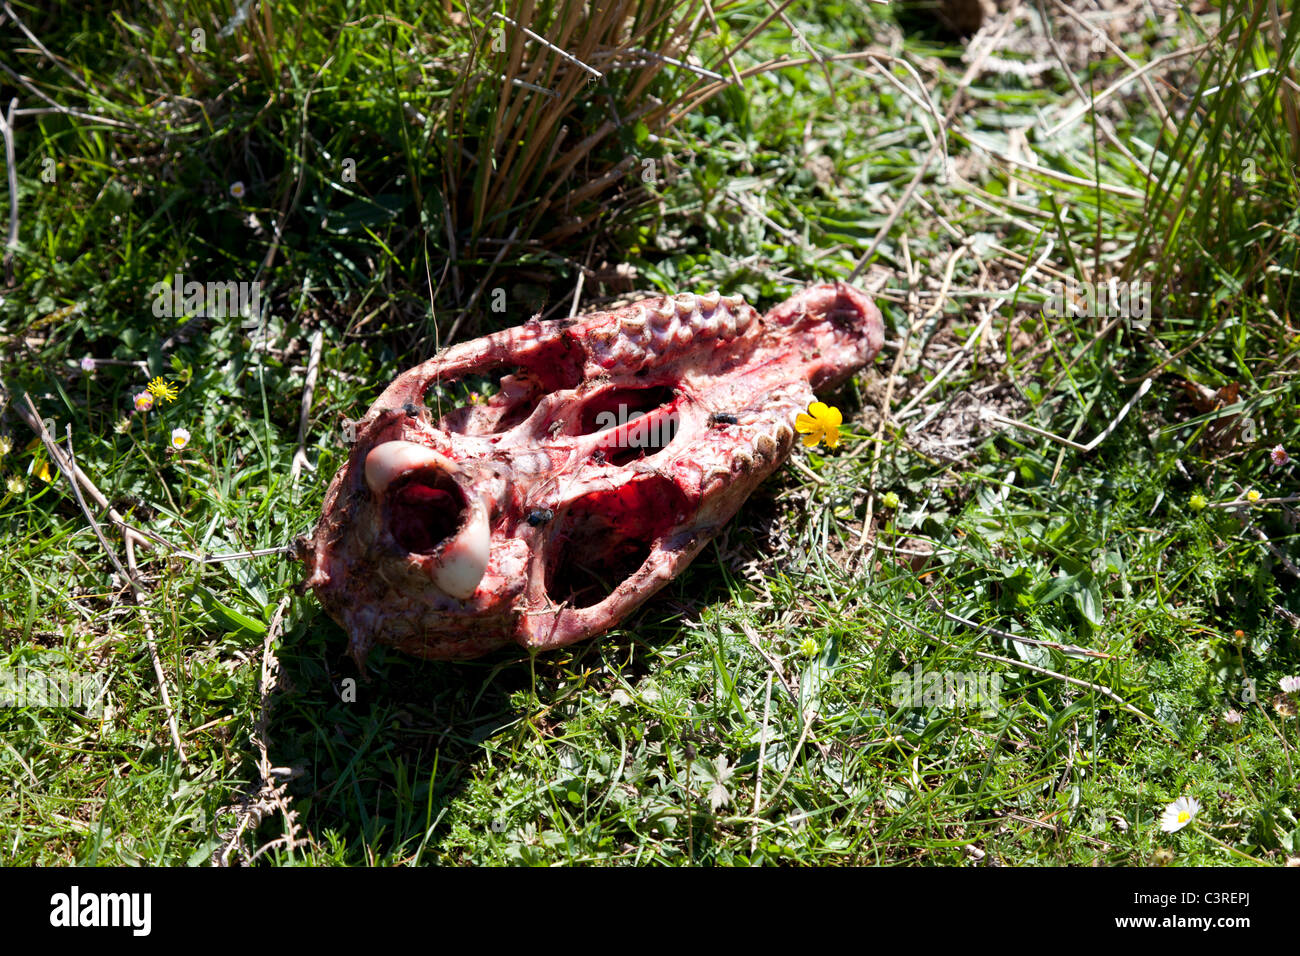 Fresh sheep's remains in the mountain (Atlantic Pyrenees - France). Restes de mouton tué dans la montagne Pyrénéenne (France). Stock Photo